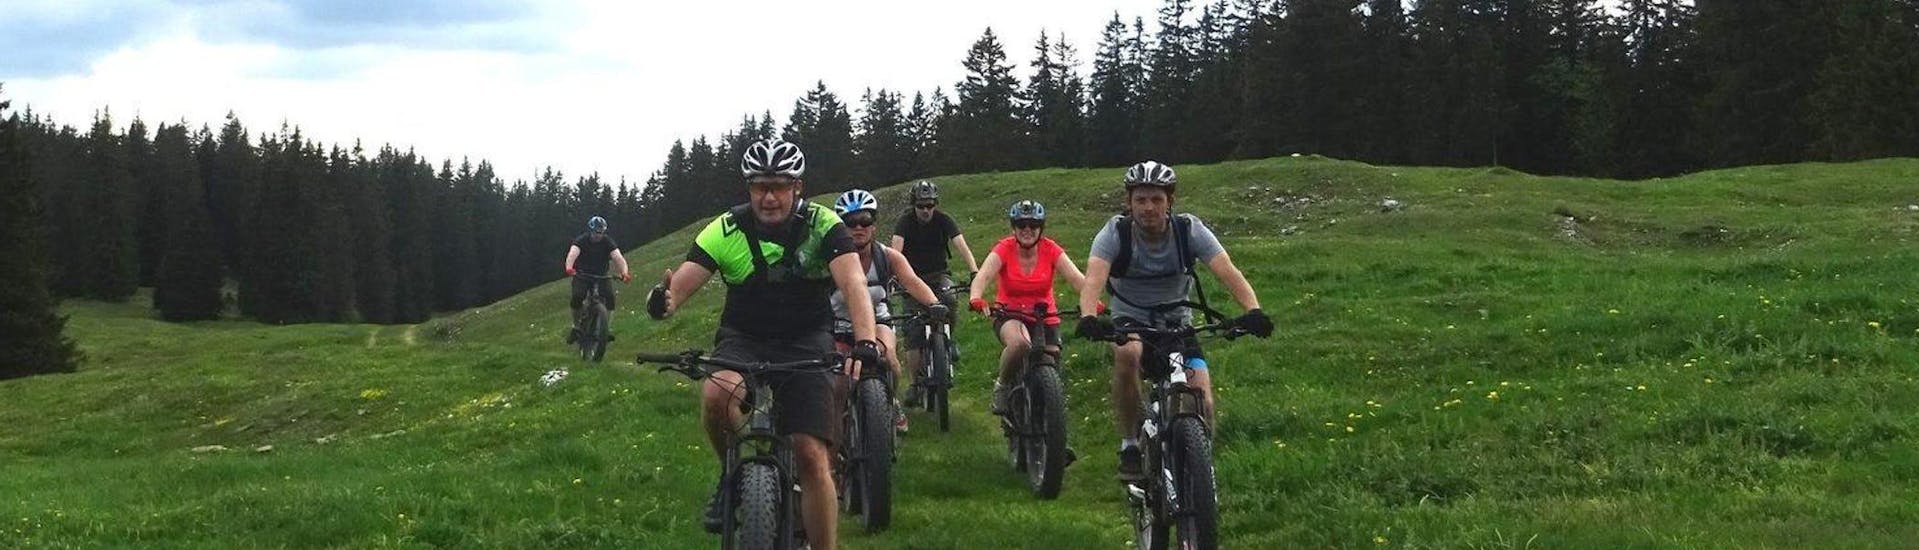 Mountainbike-Tour - Parc Jura vaudois.